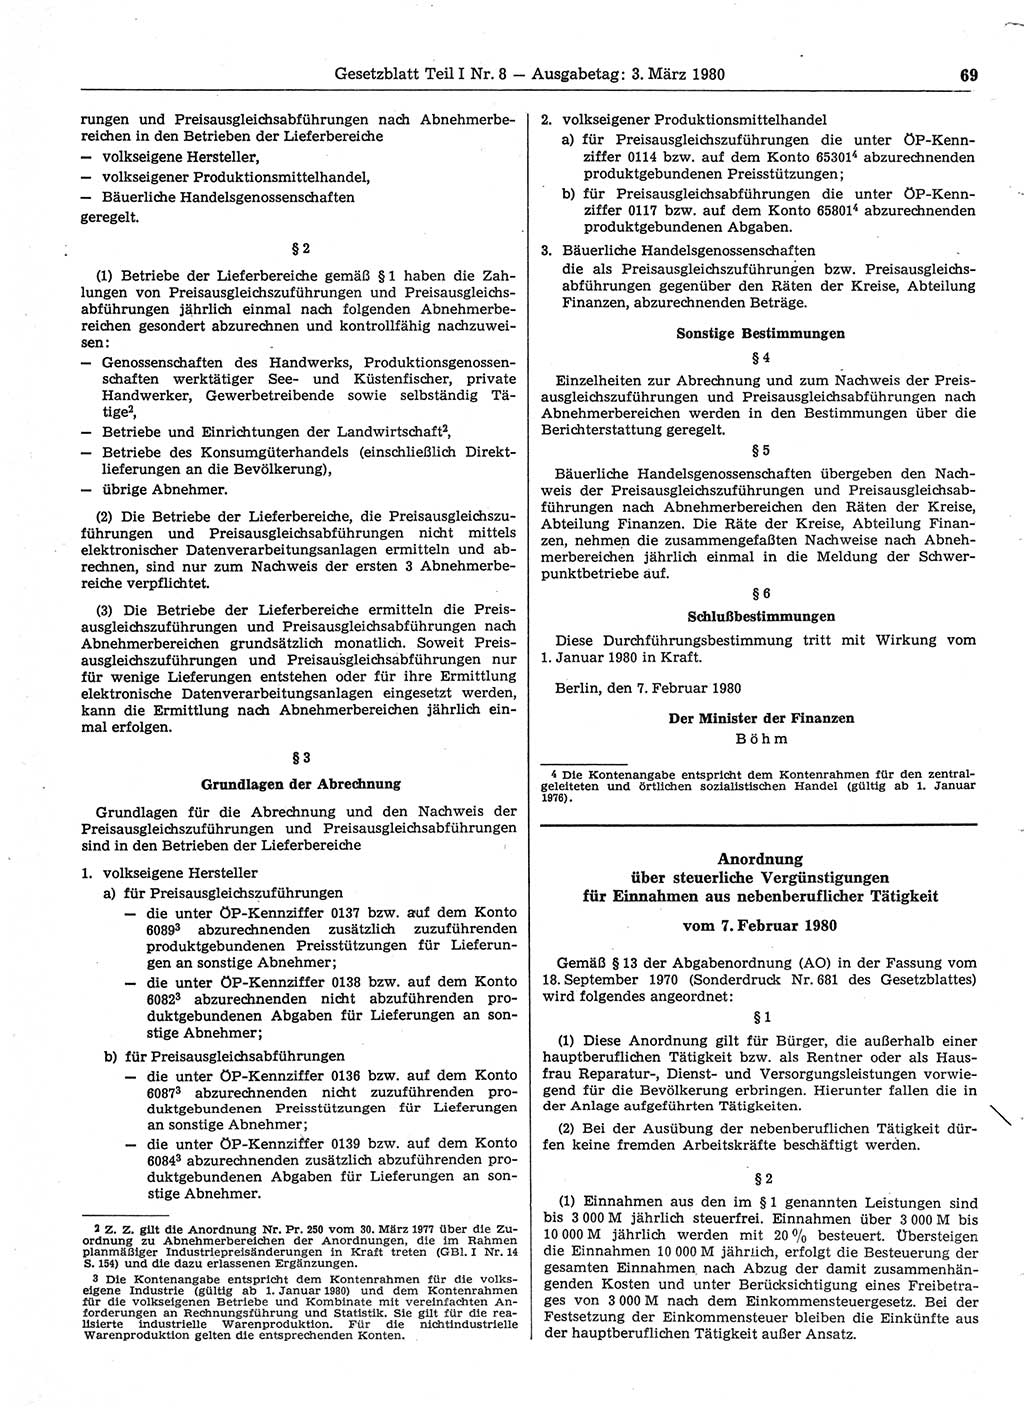 Gesetzblatt (GBl.) der Deutschen Demokratischen Republik (DDR) Teil Ⅰ 1980, Seite 69 (GBl. DDR Ⅰ 1980, S. 69)